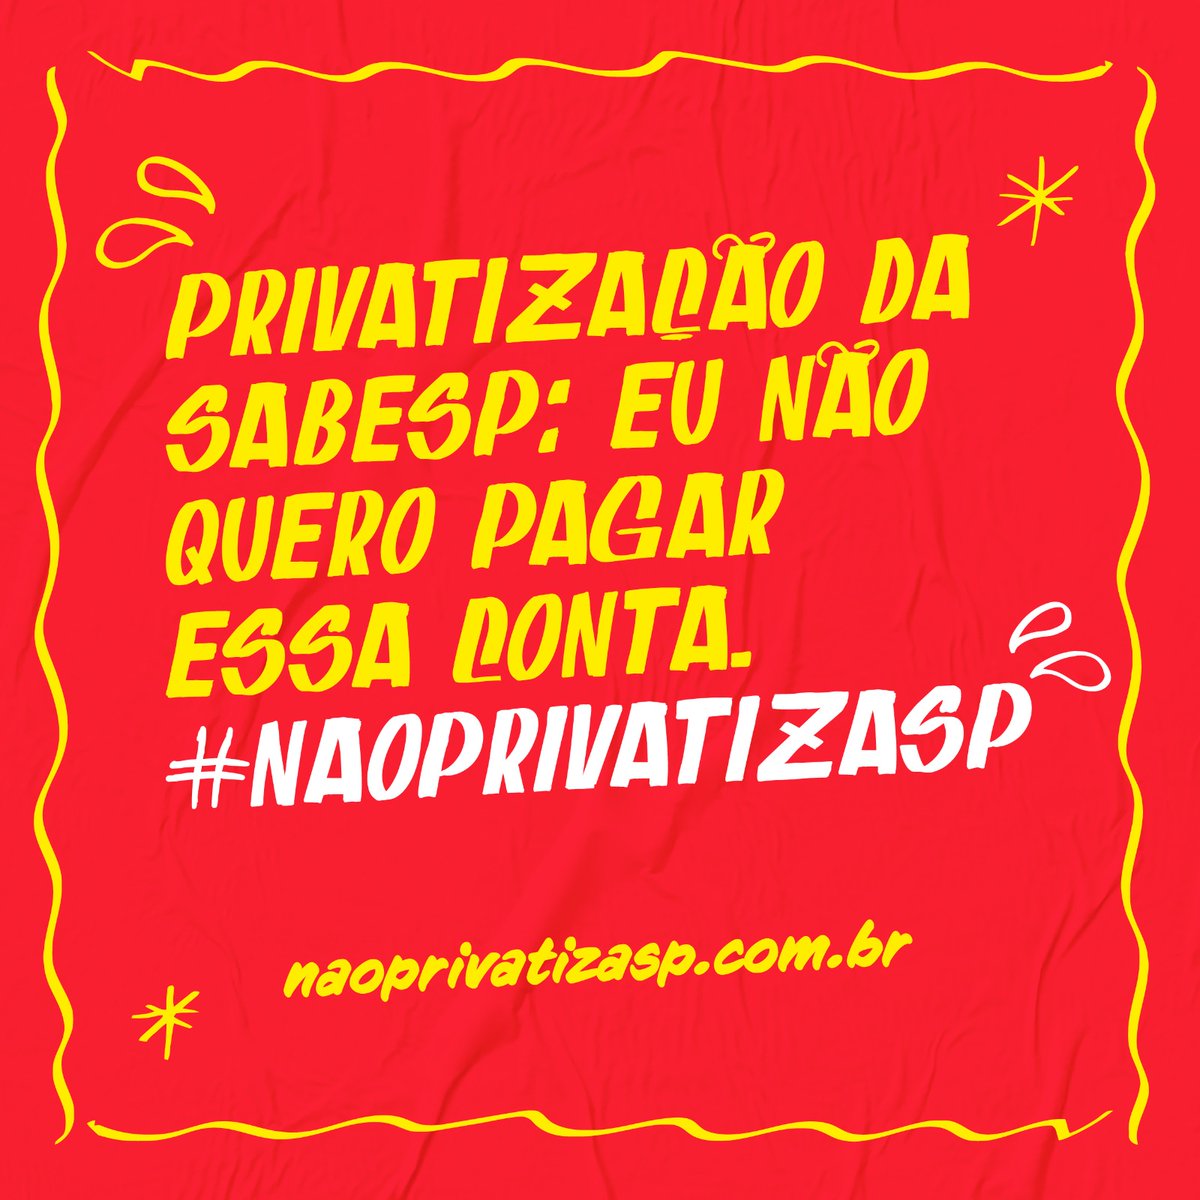 Ricardo Nunes está louco para privatizar a Sabesp, mas quem mais perde com a concessão é justamente a cidade de São Paulo. #NaoPrivatizaSP